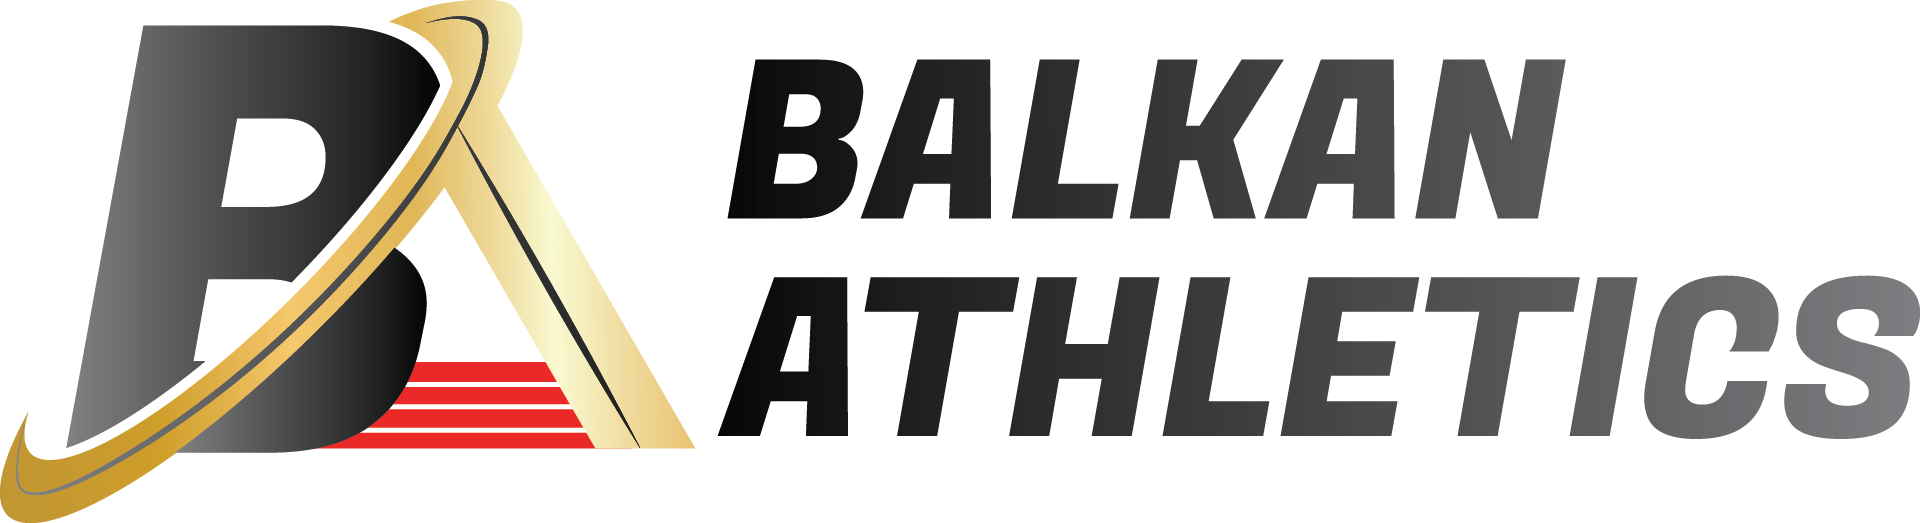 ABAF je prošlost – Balkanska atletika je sadašnjos: Novo ime, logo, sajt, status…